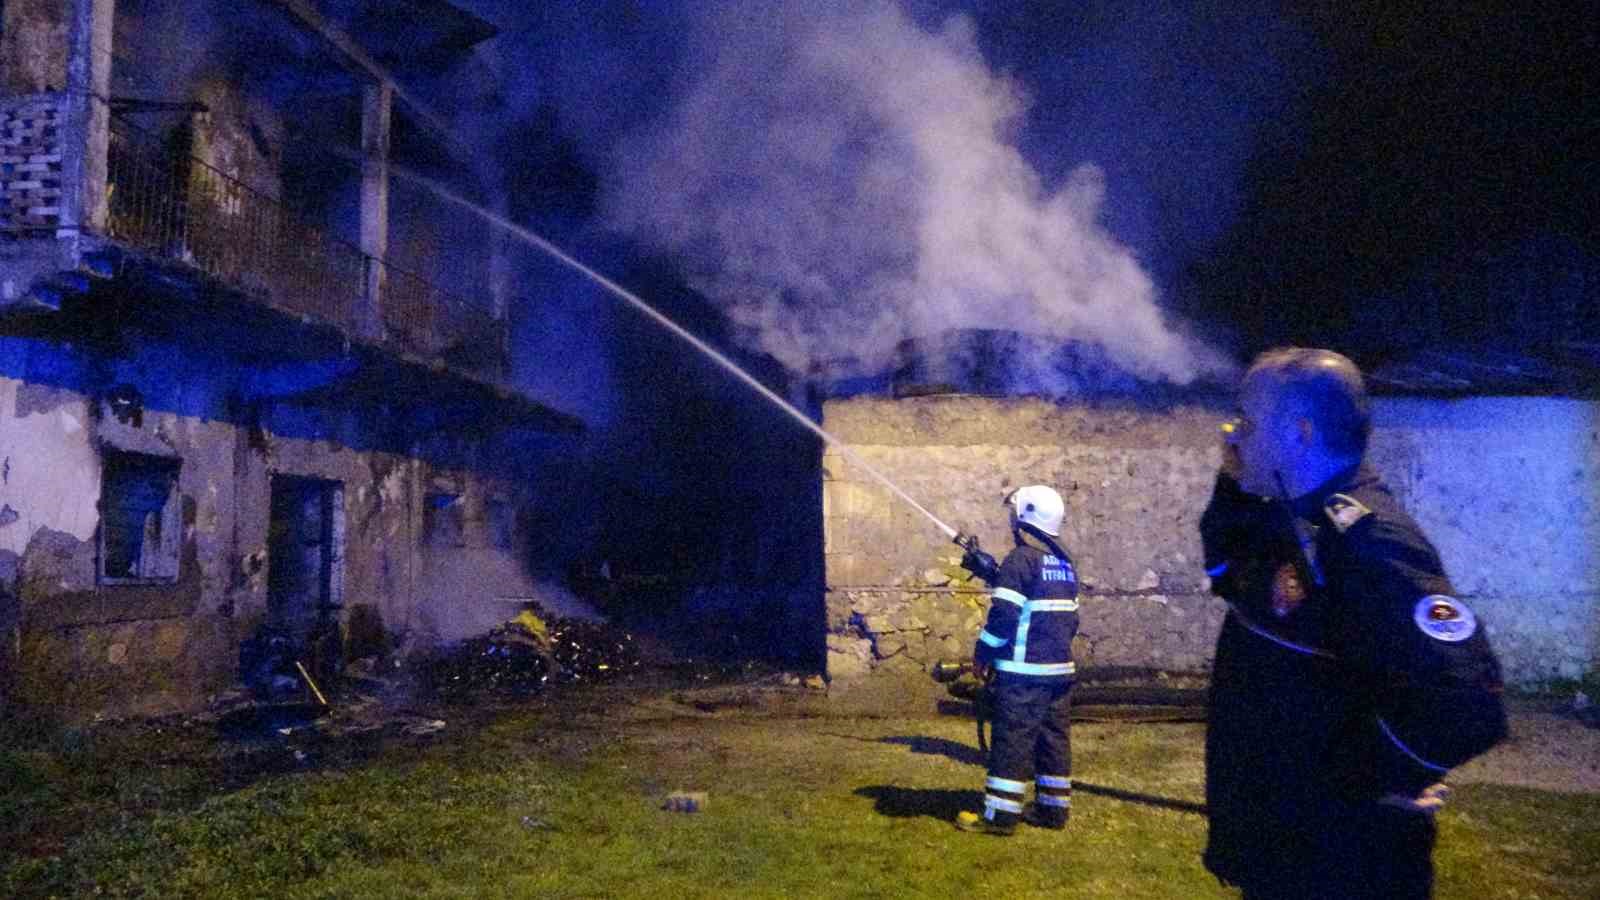 Adana’da evde çıkan yangında anne ve iki çocuğu hayatını kaybetti
